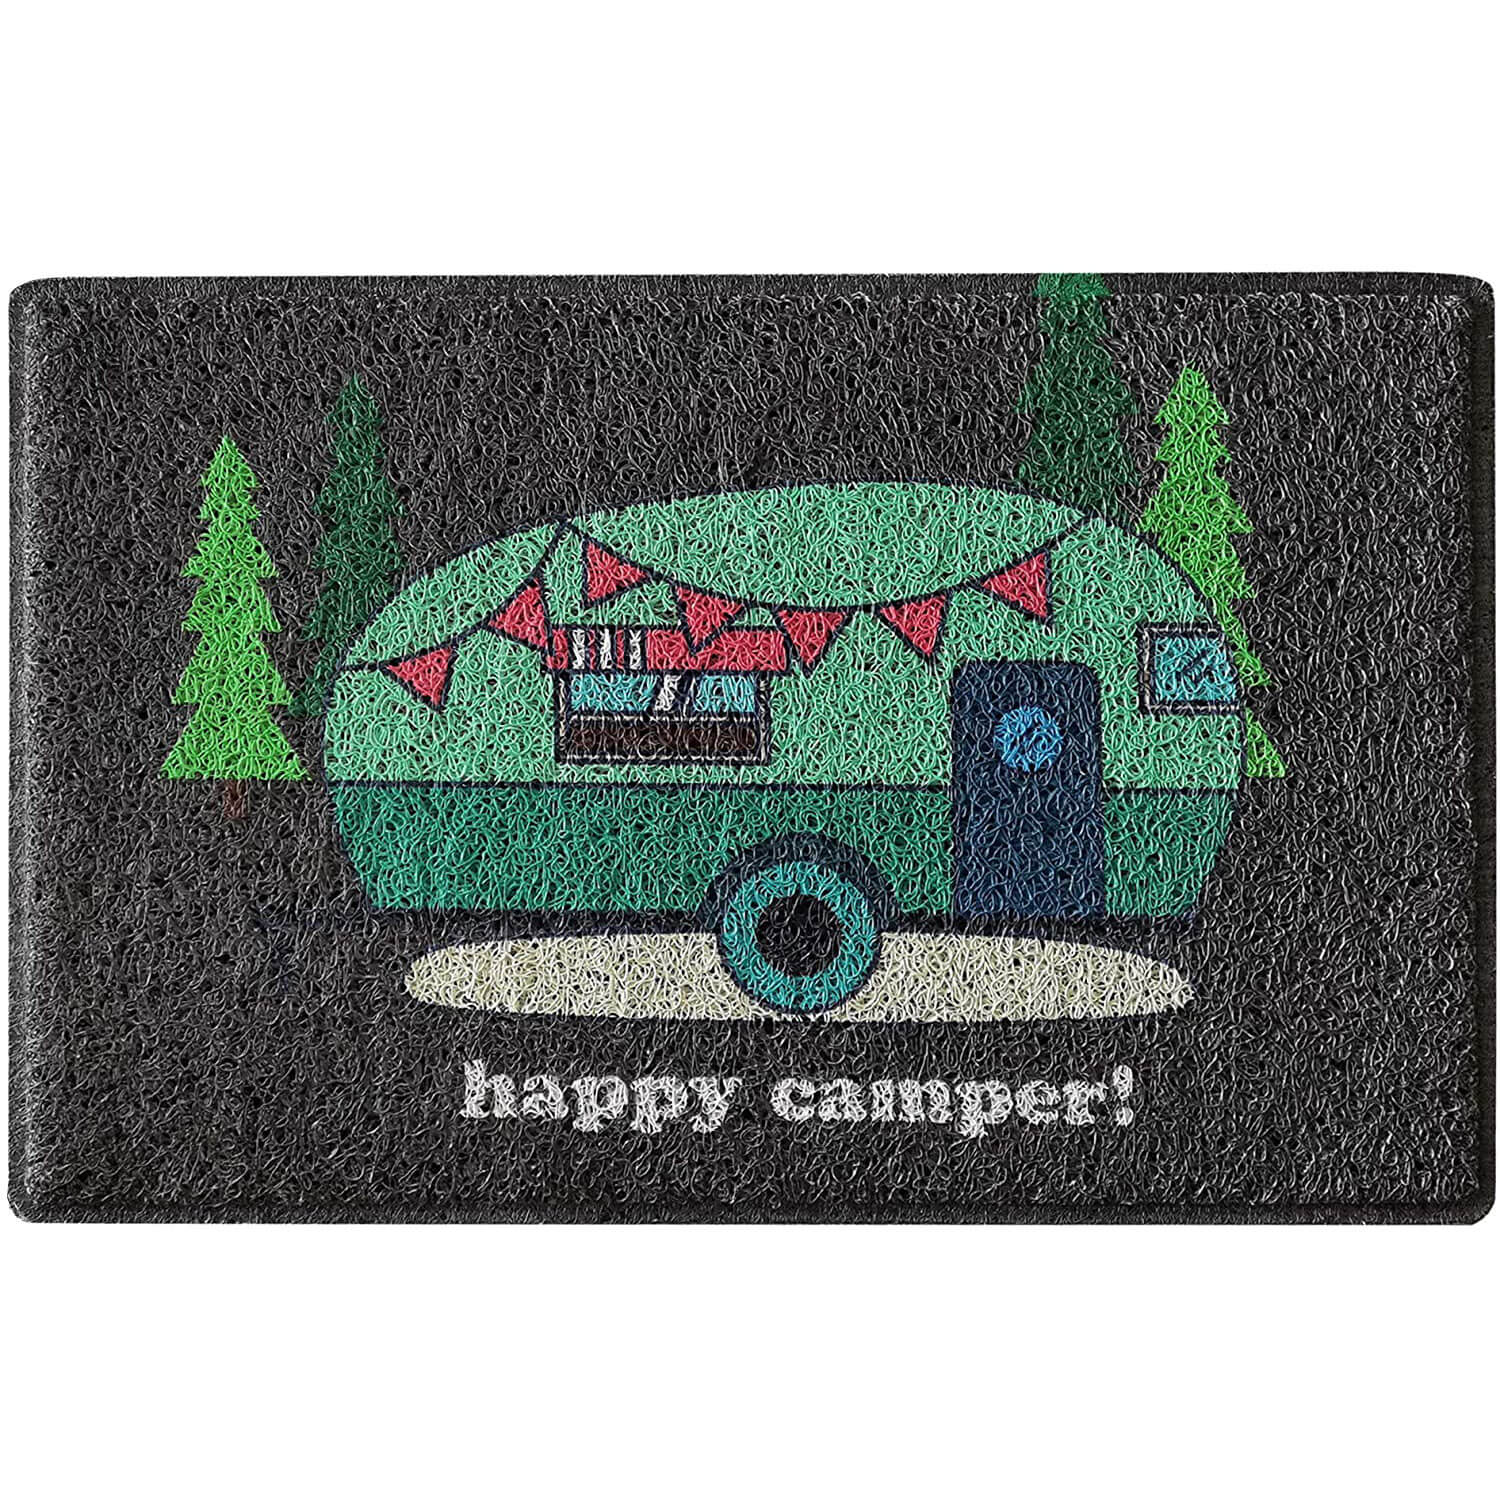 Aucuda Happy Camper Door Mat,Autumn Outdoor Door Mat Waterproof,Christmas  RV Front Door Mats Outdoor,24x16 Trailer Xmas Welcome Mats for Front Door